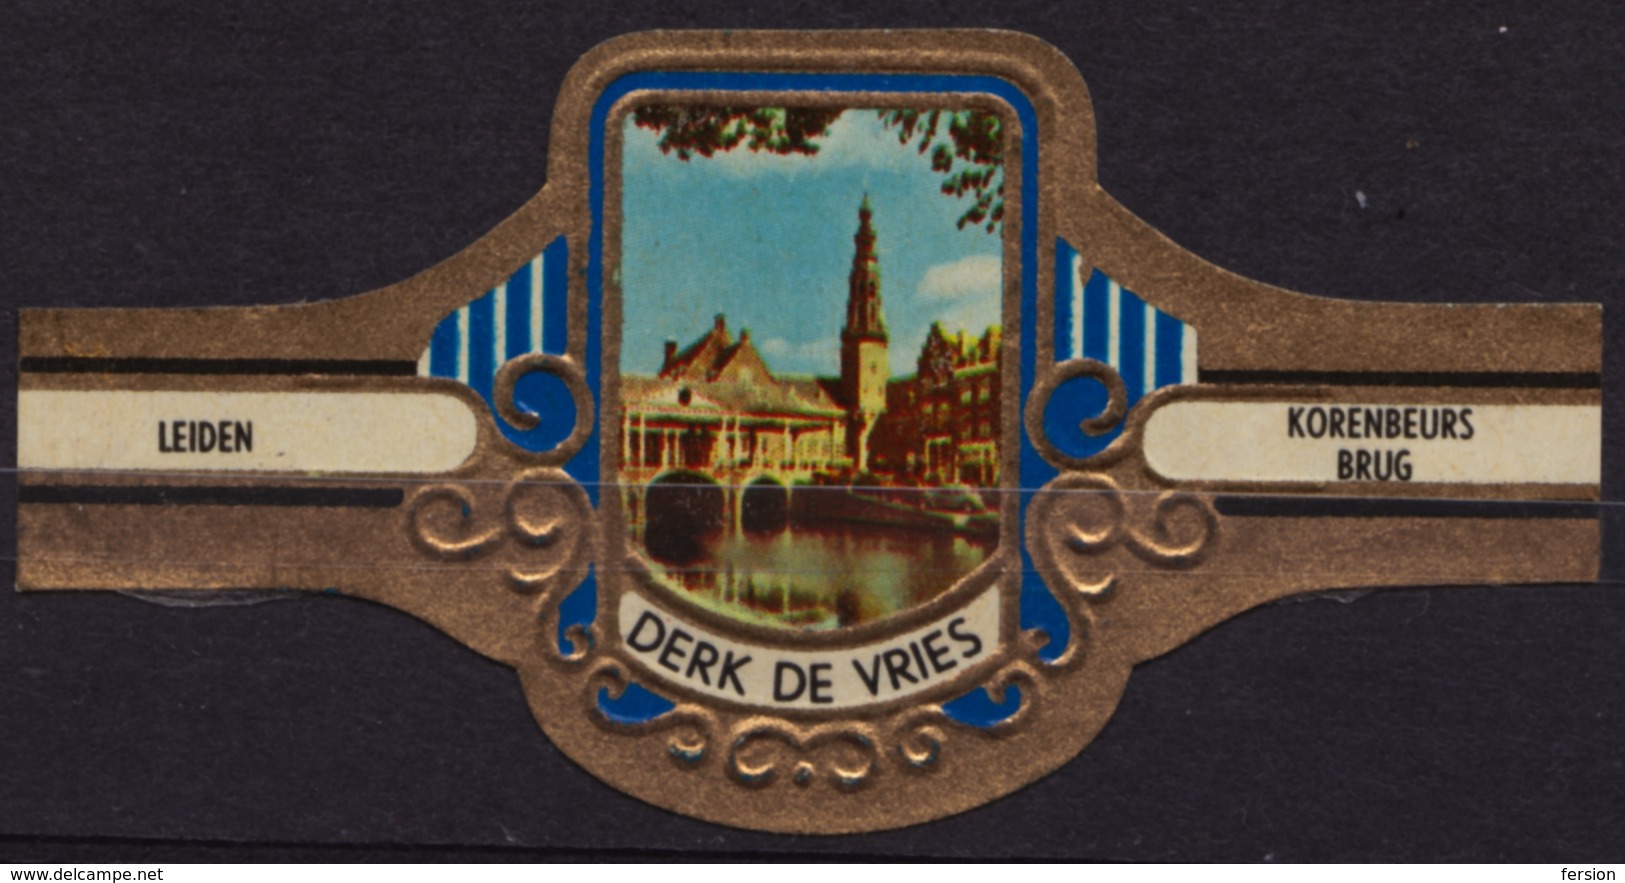 Leiden Netherlands Korenbeurs Brug Bridge - Derk De Vries - Netherlands - CIGAR CIGARS Label Vignette - Labels